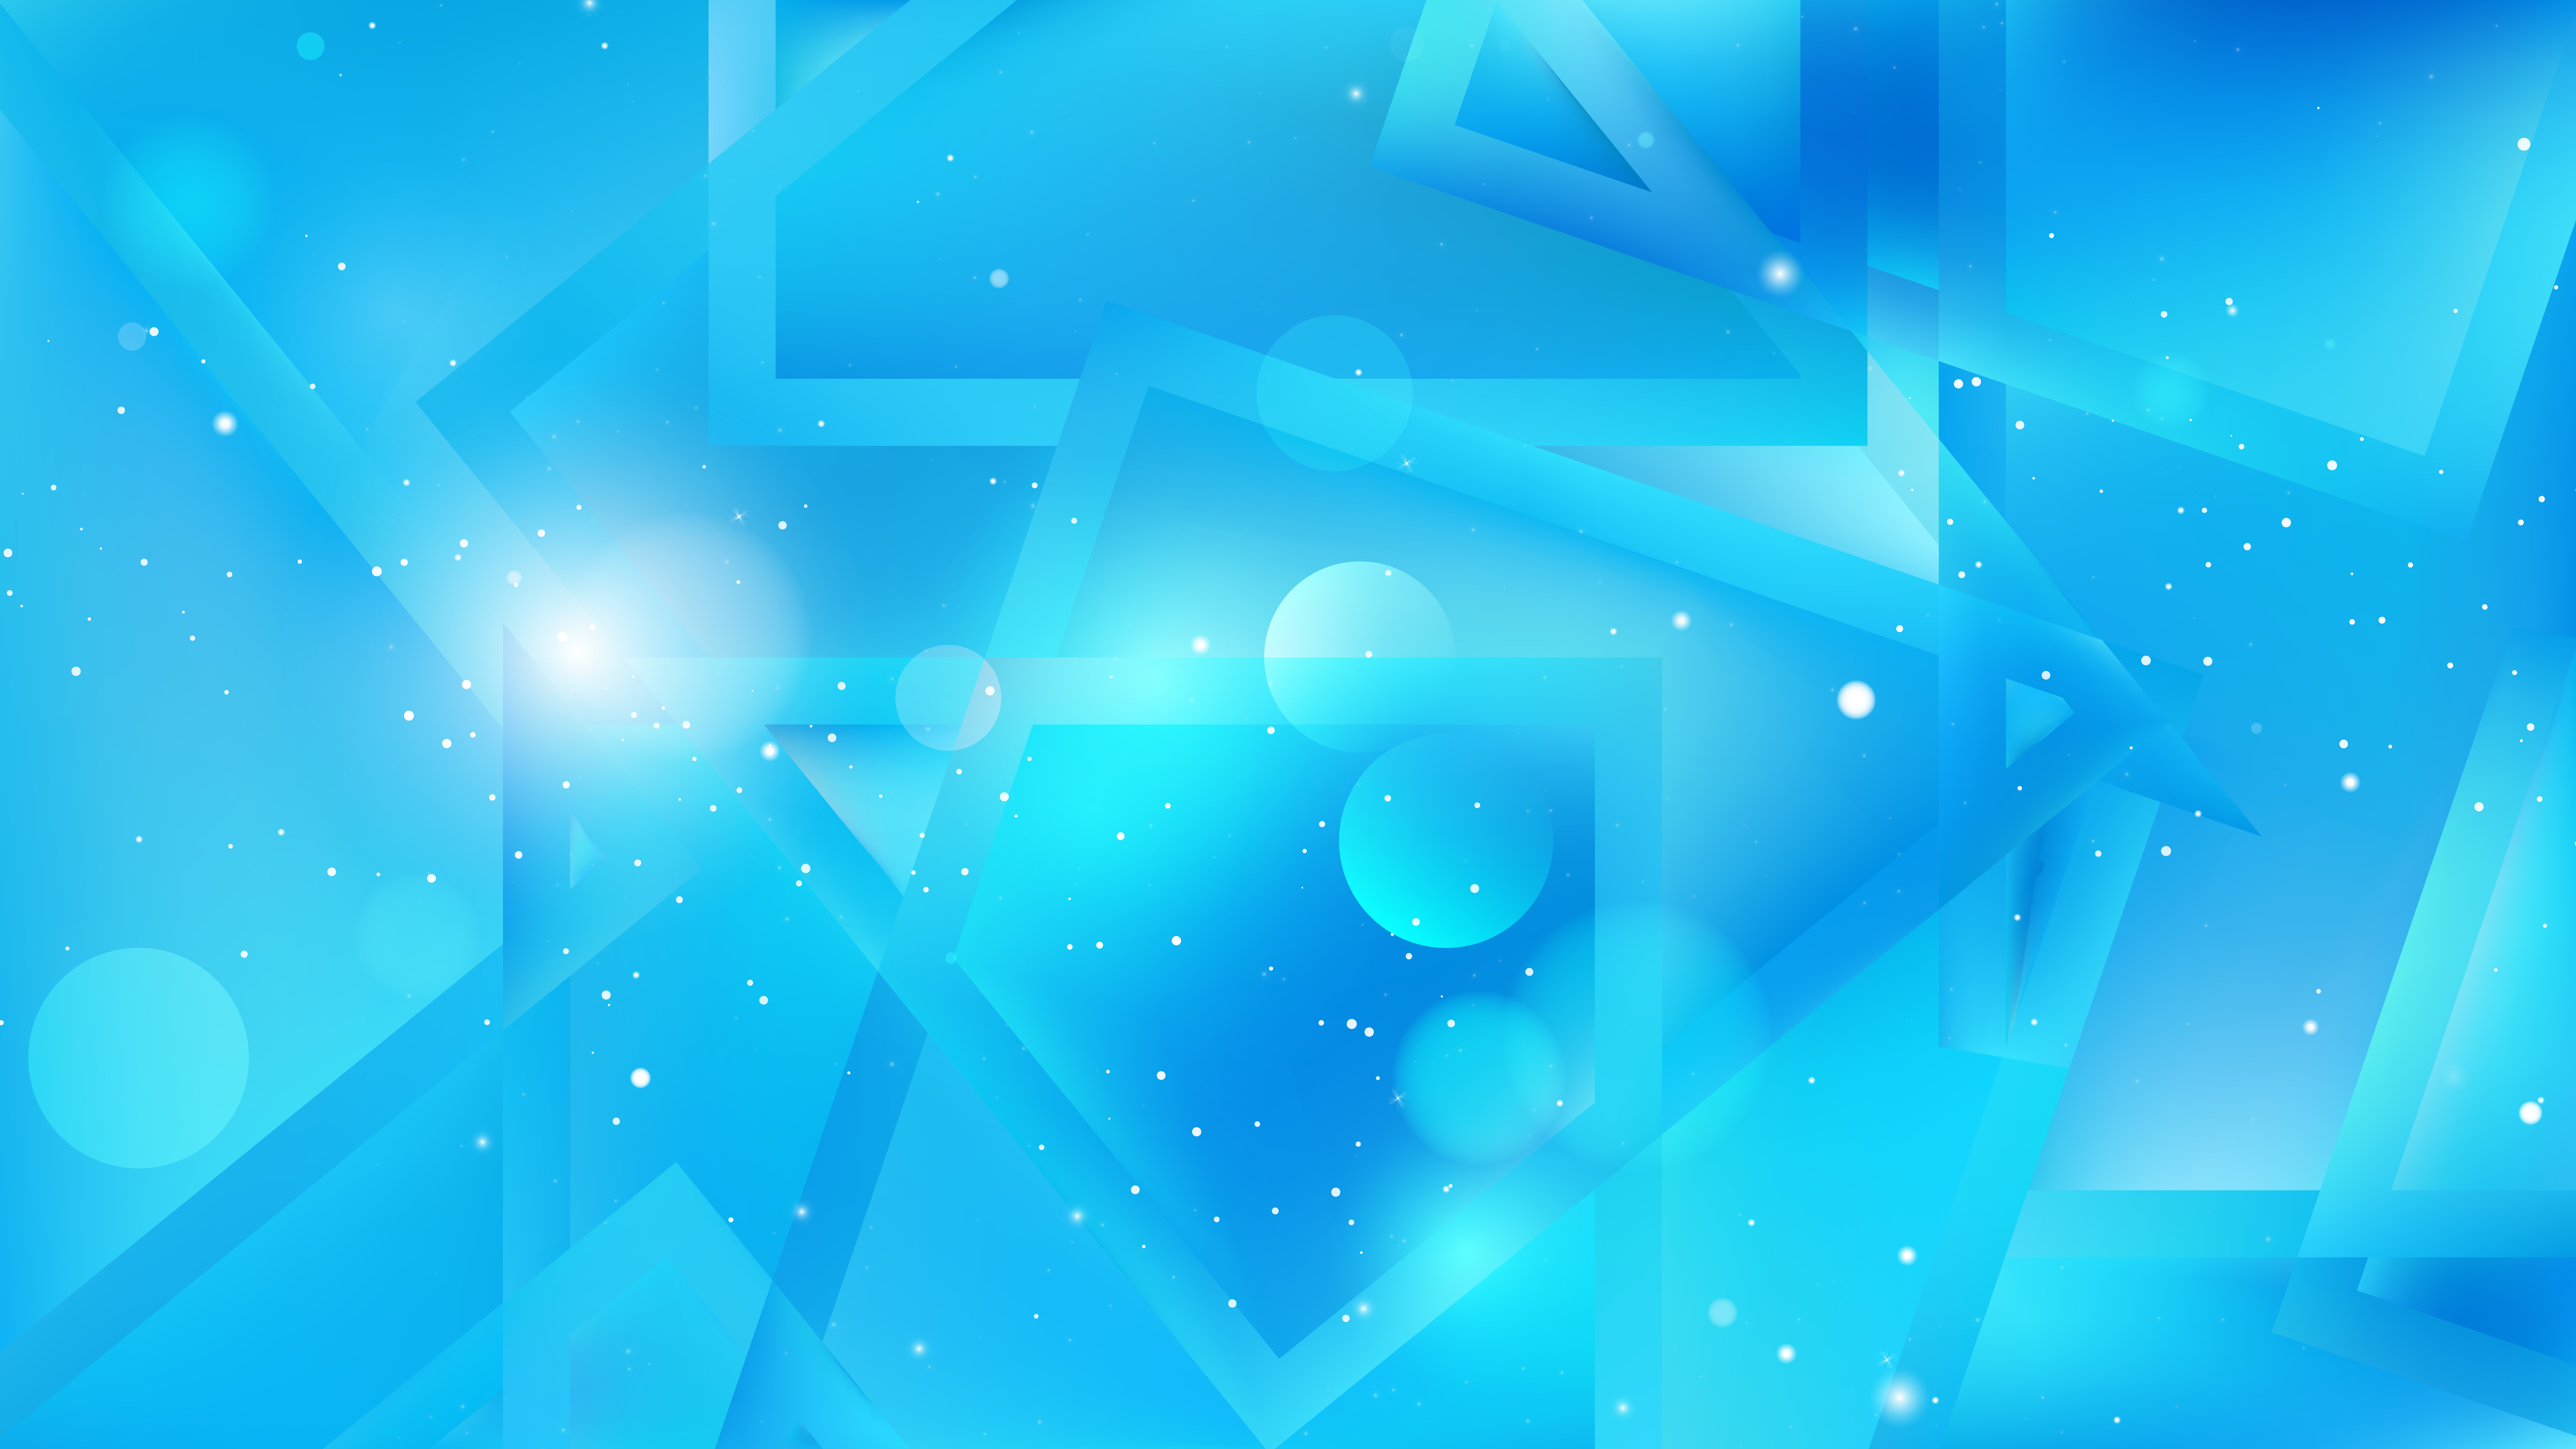 Download Kumpulan 89+ Background Design Blue Terbaik - Background ID